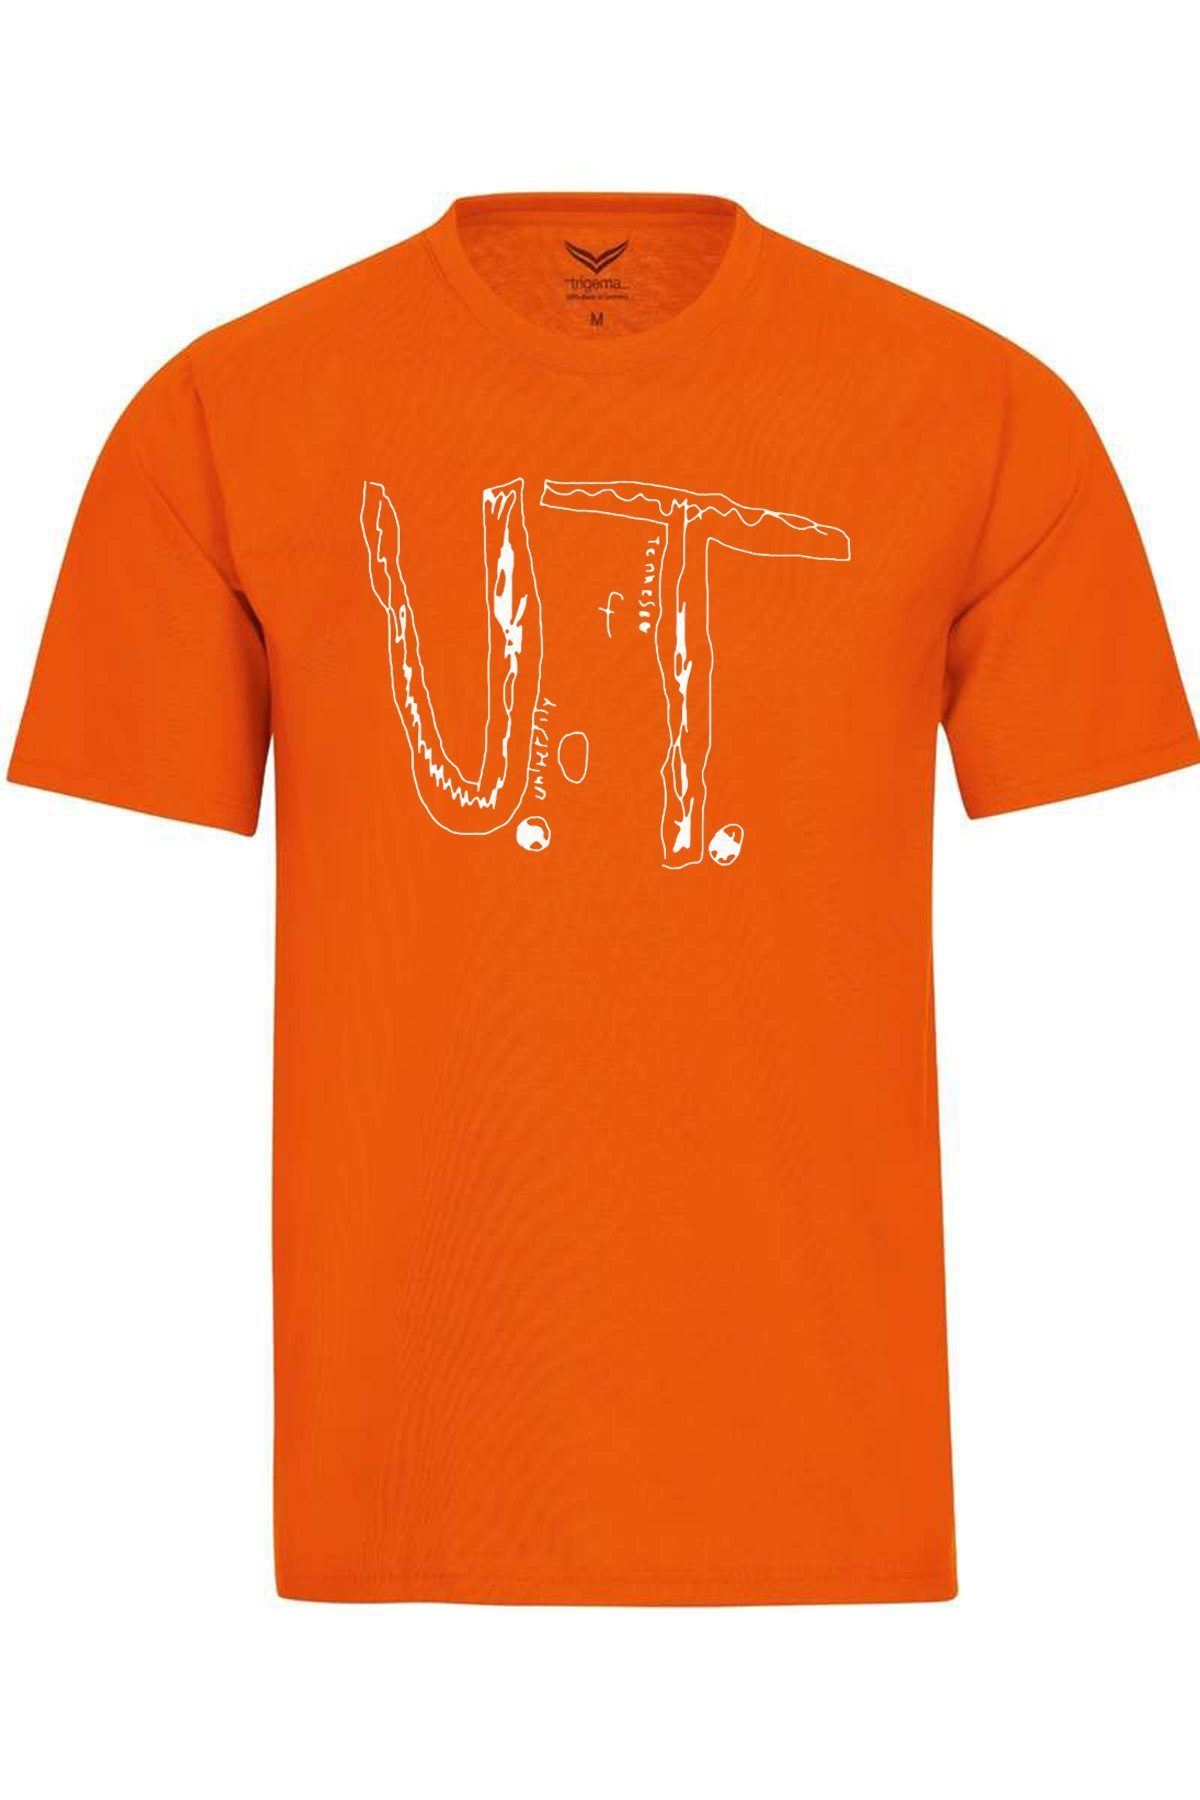 UT Tennessee Anti Bullying Homemade University Original T-Shirt ...